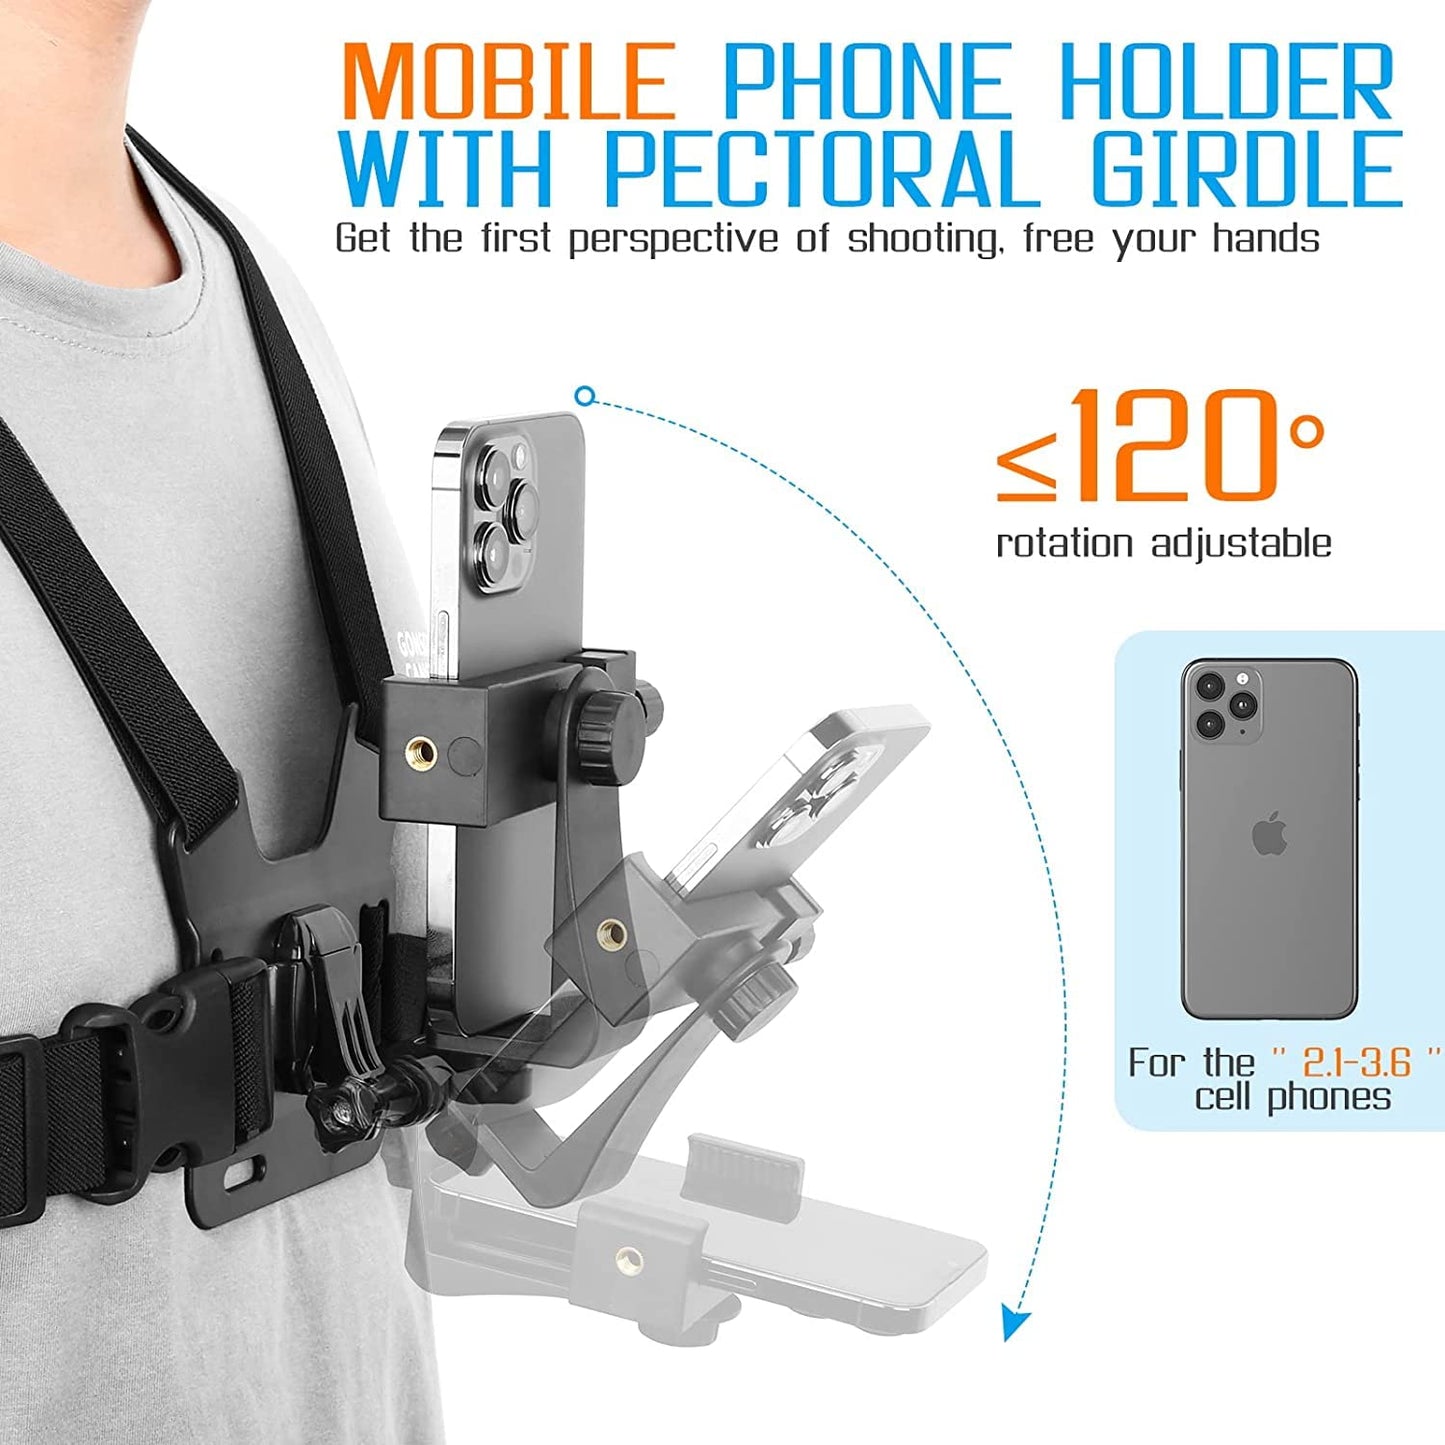 GO PRO Chest Kit For Mobile Phone Holder